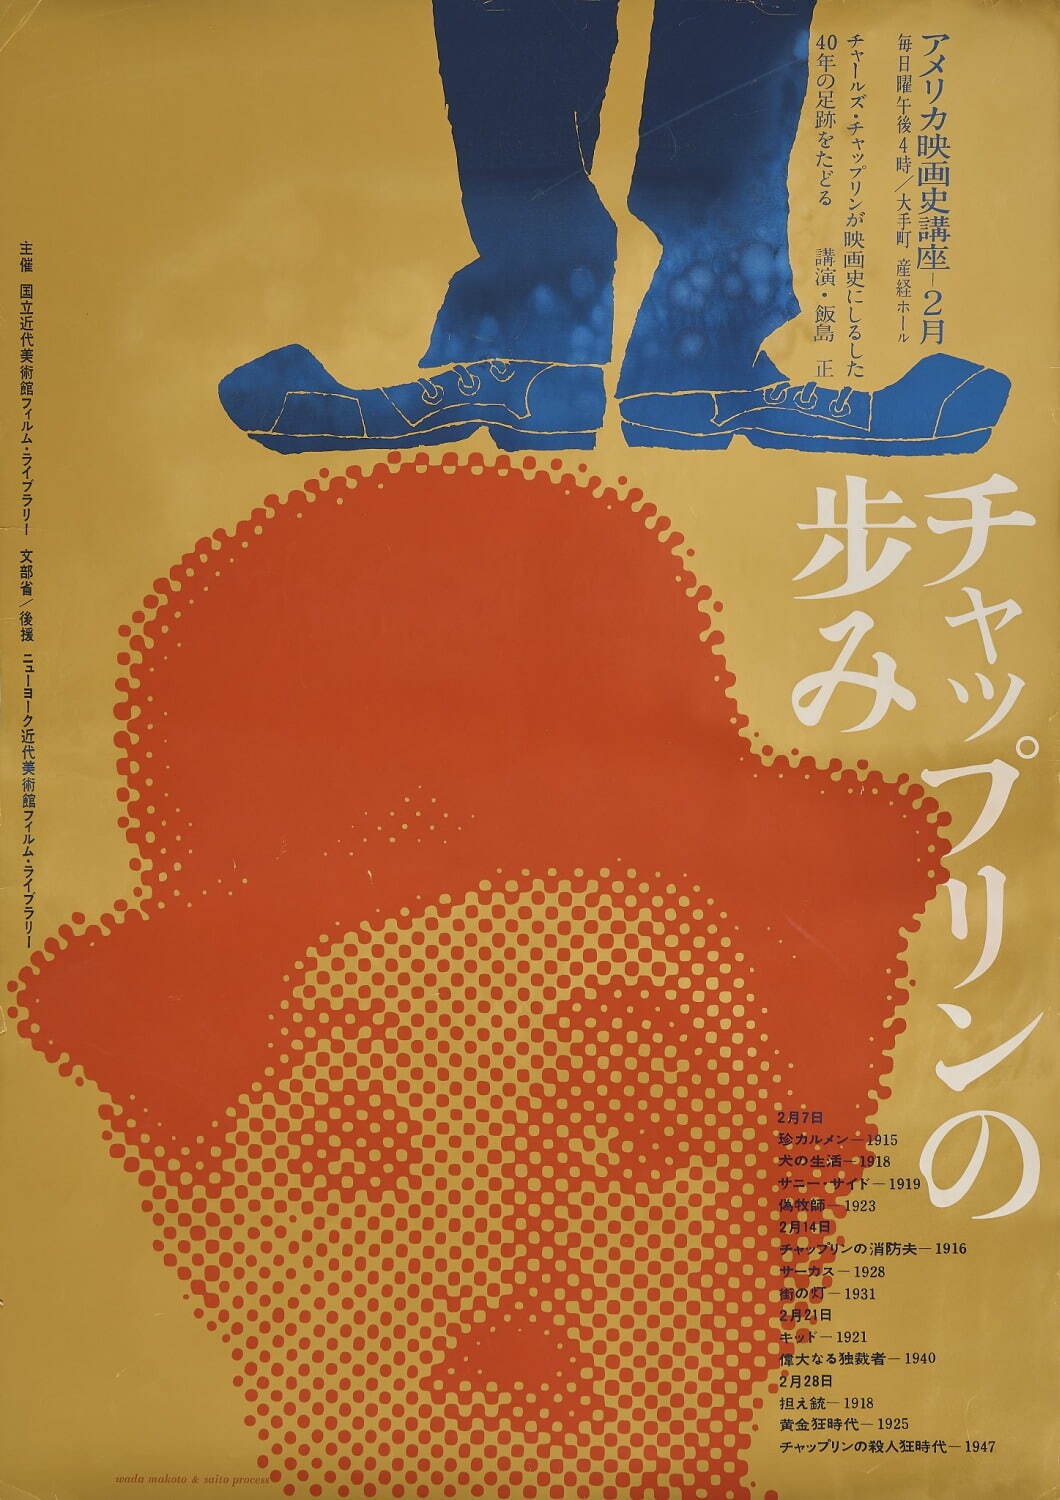 展覧会「和田誠 映画の仕事」東京・国立映画アーカイブで、ポスターや